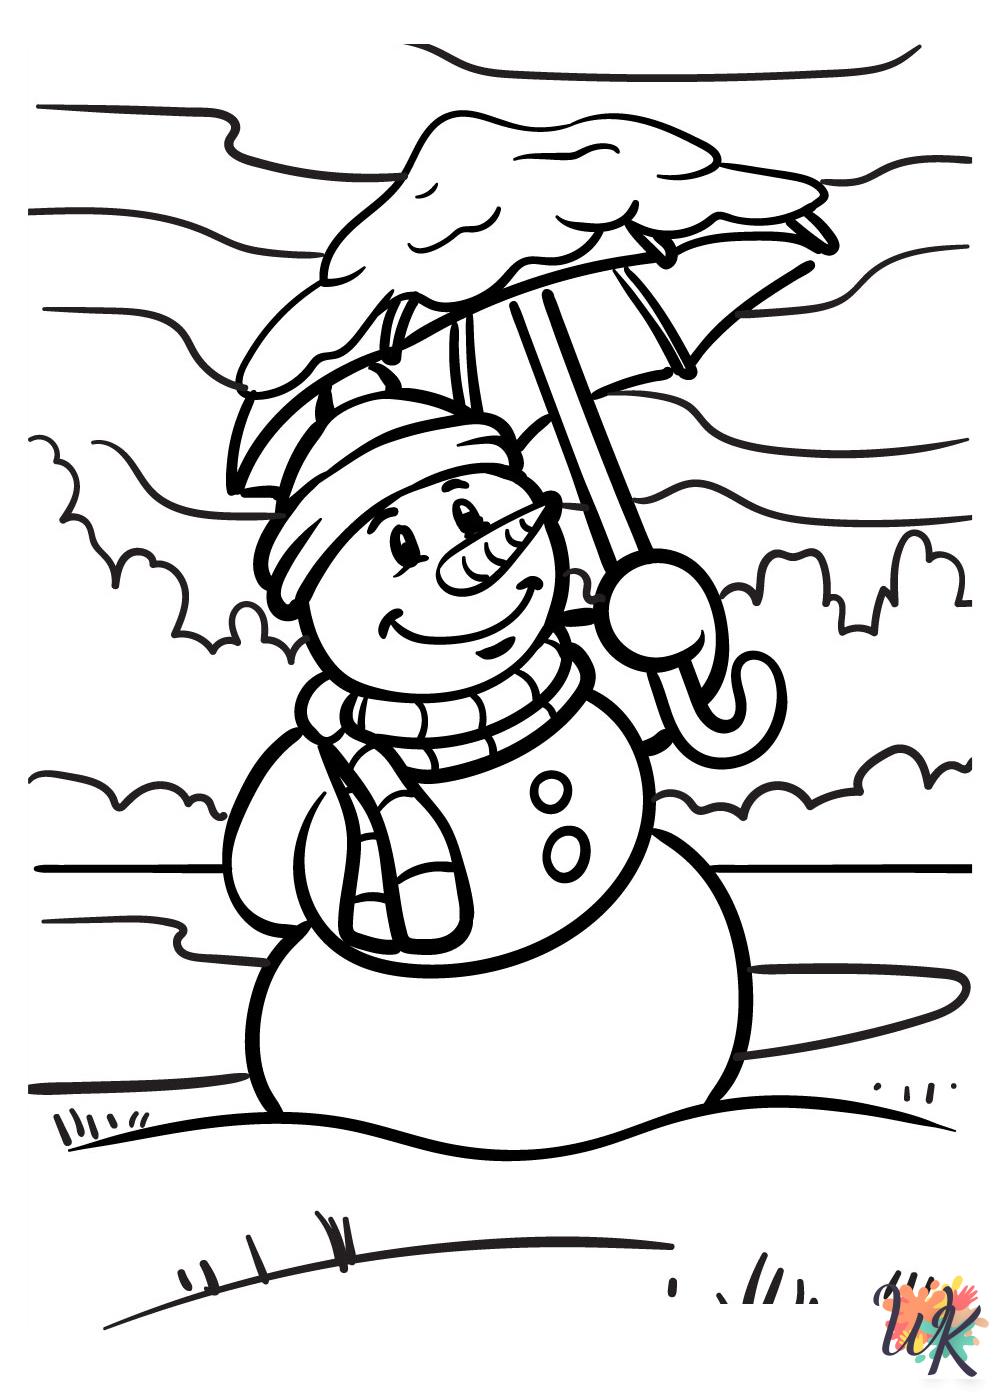 Snowman coloring pages pdf